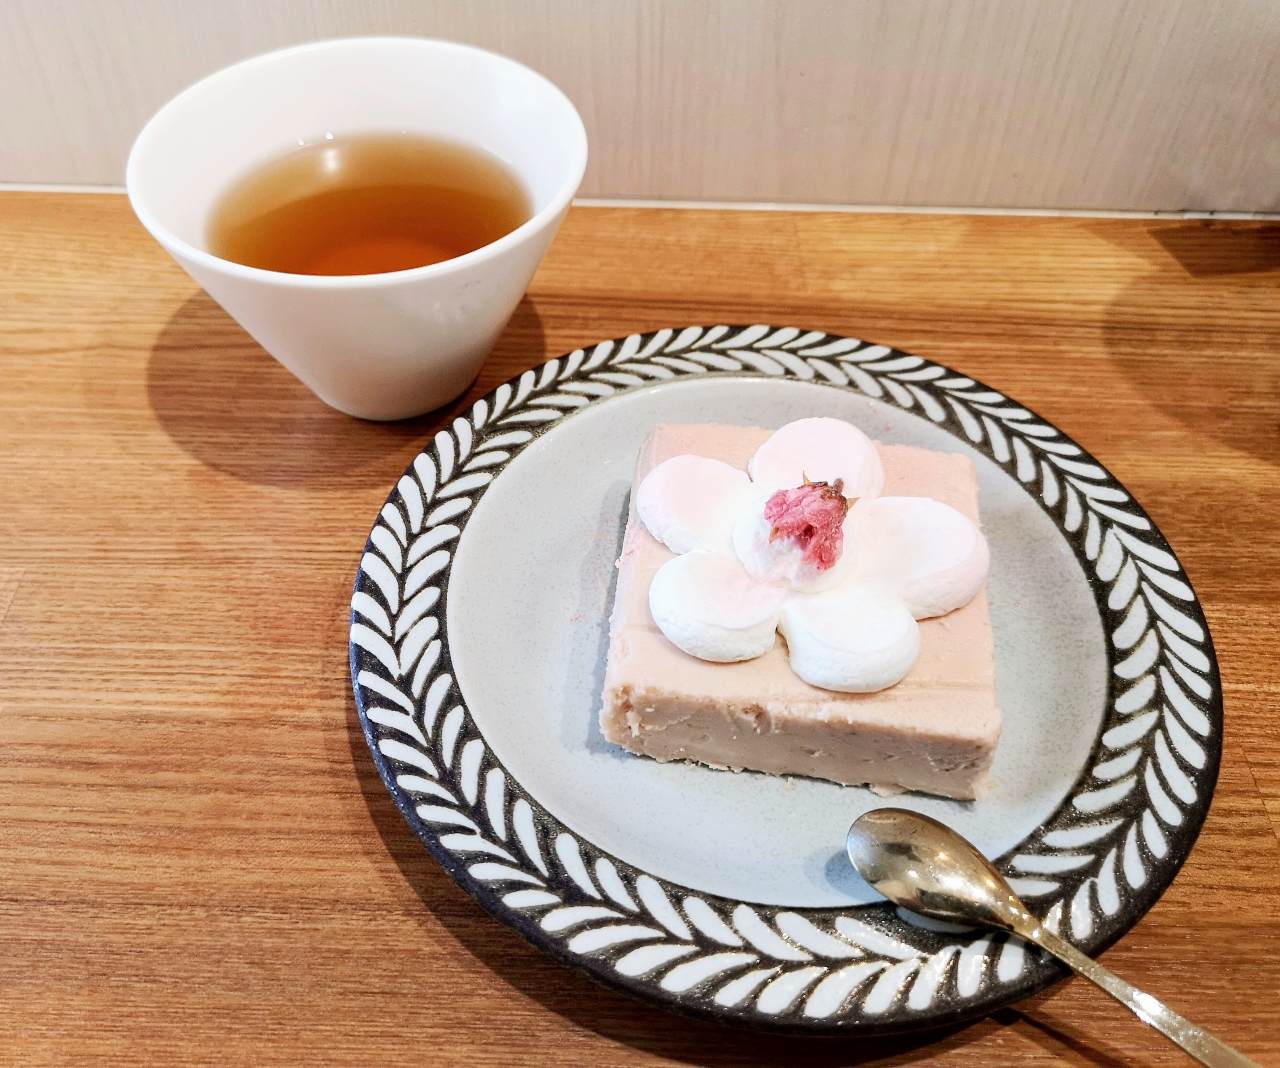 東京都目黒区・桜スイーツ専門店「ナナシノ桜菓子店」さくらチーズケーキ